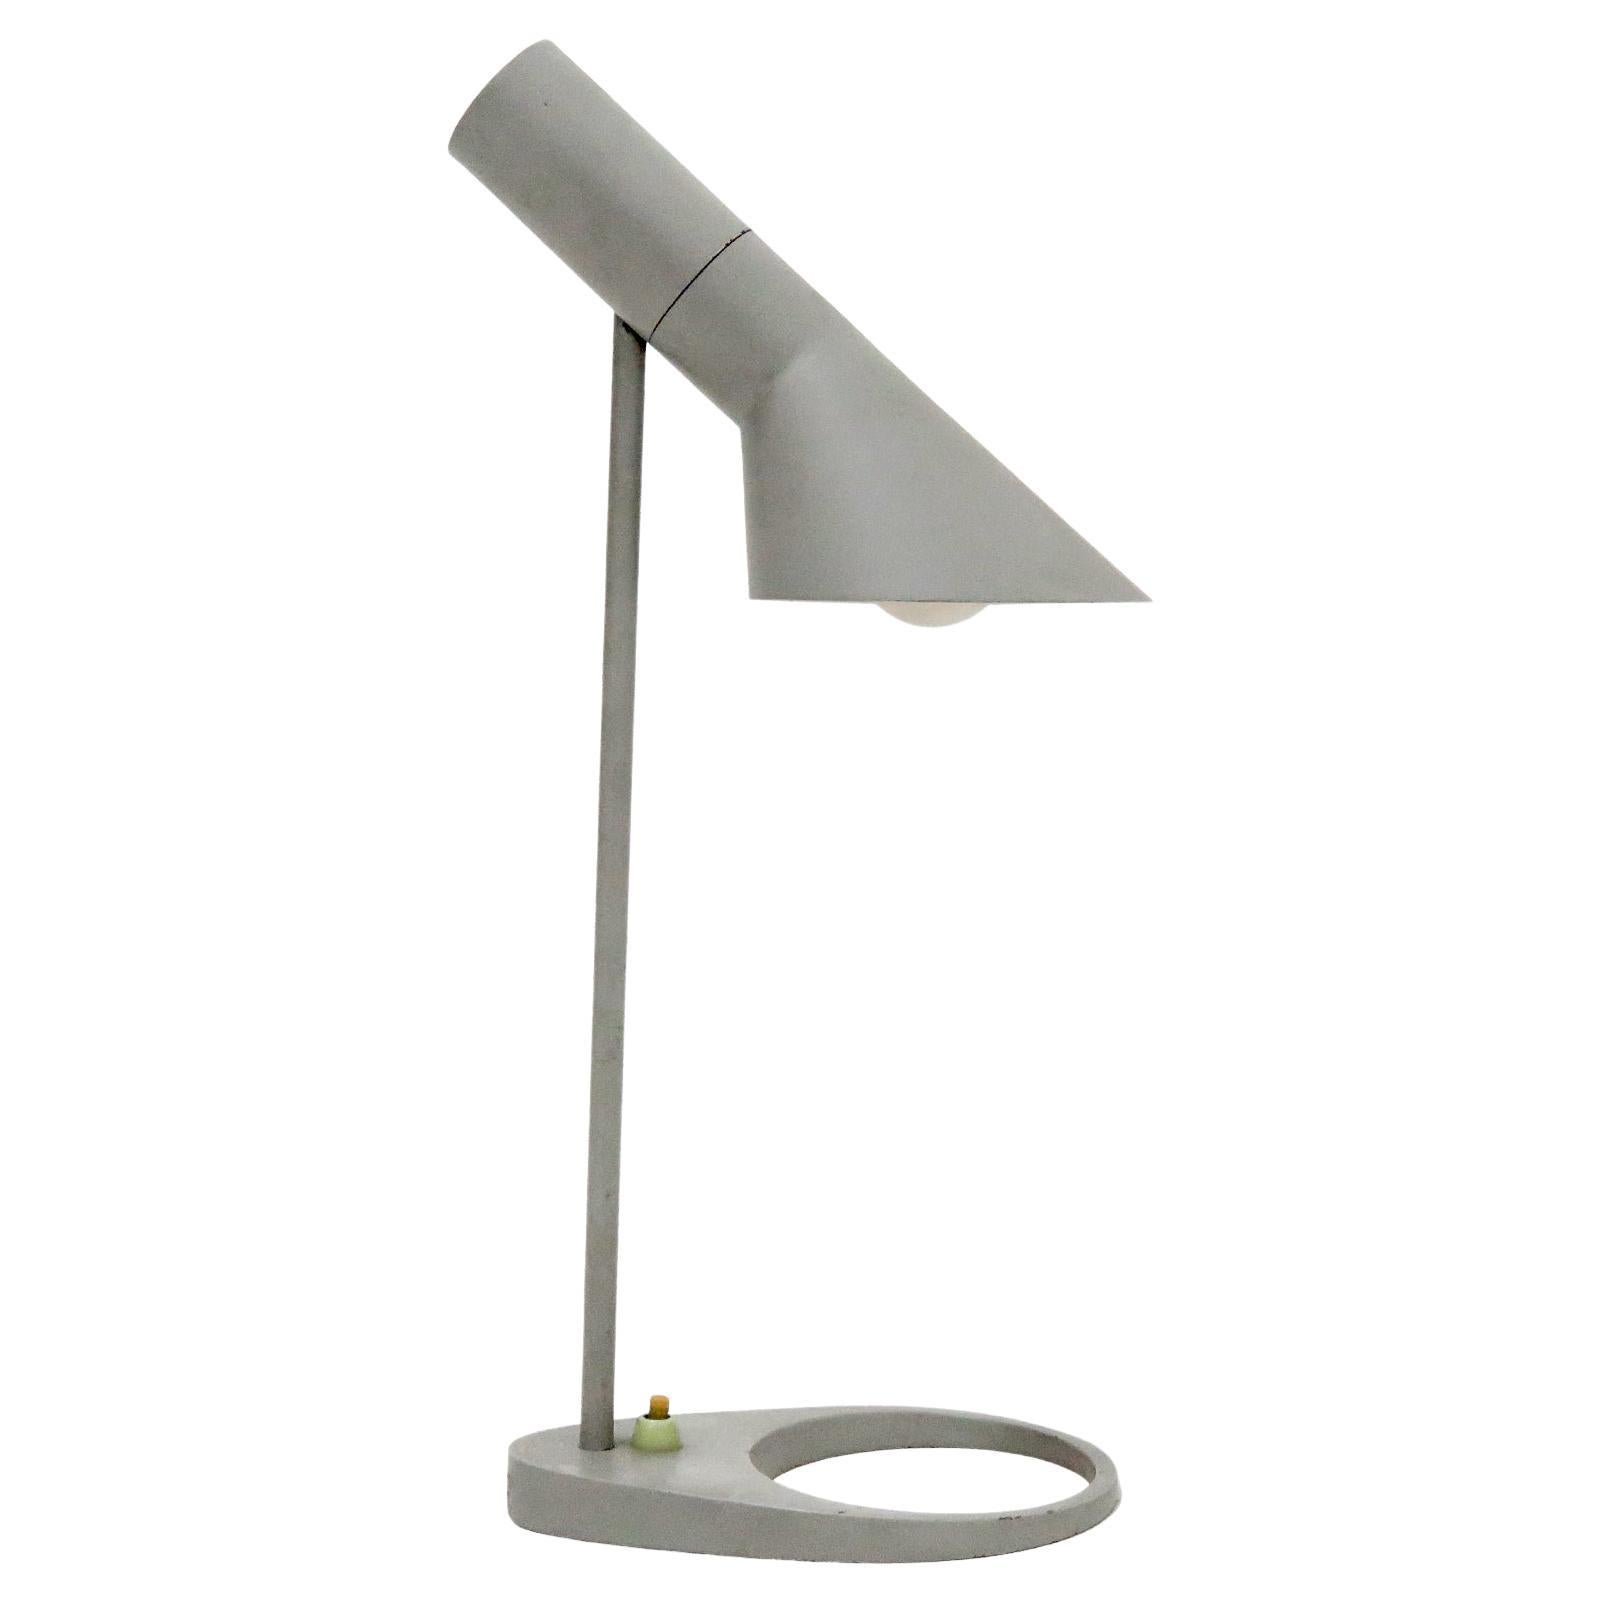 Rare Arne Jacobsen 'AJ' Desk Lamp, 1957